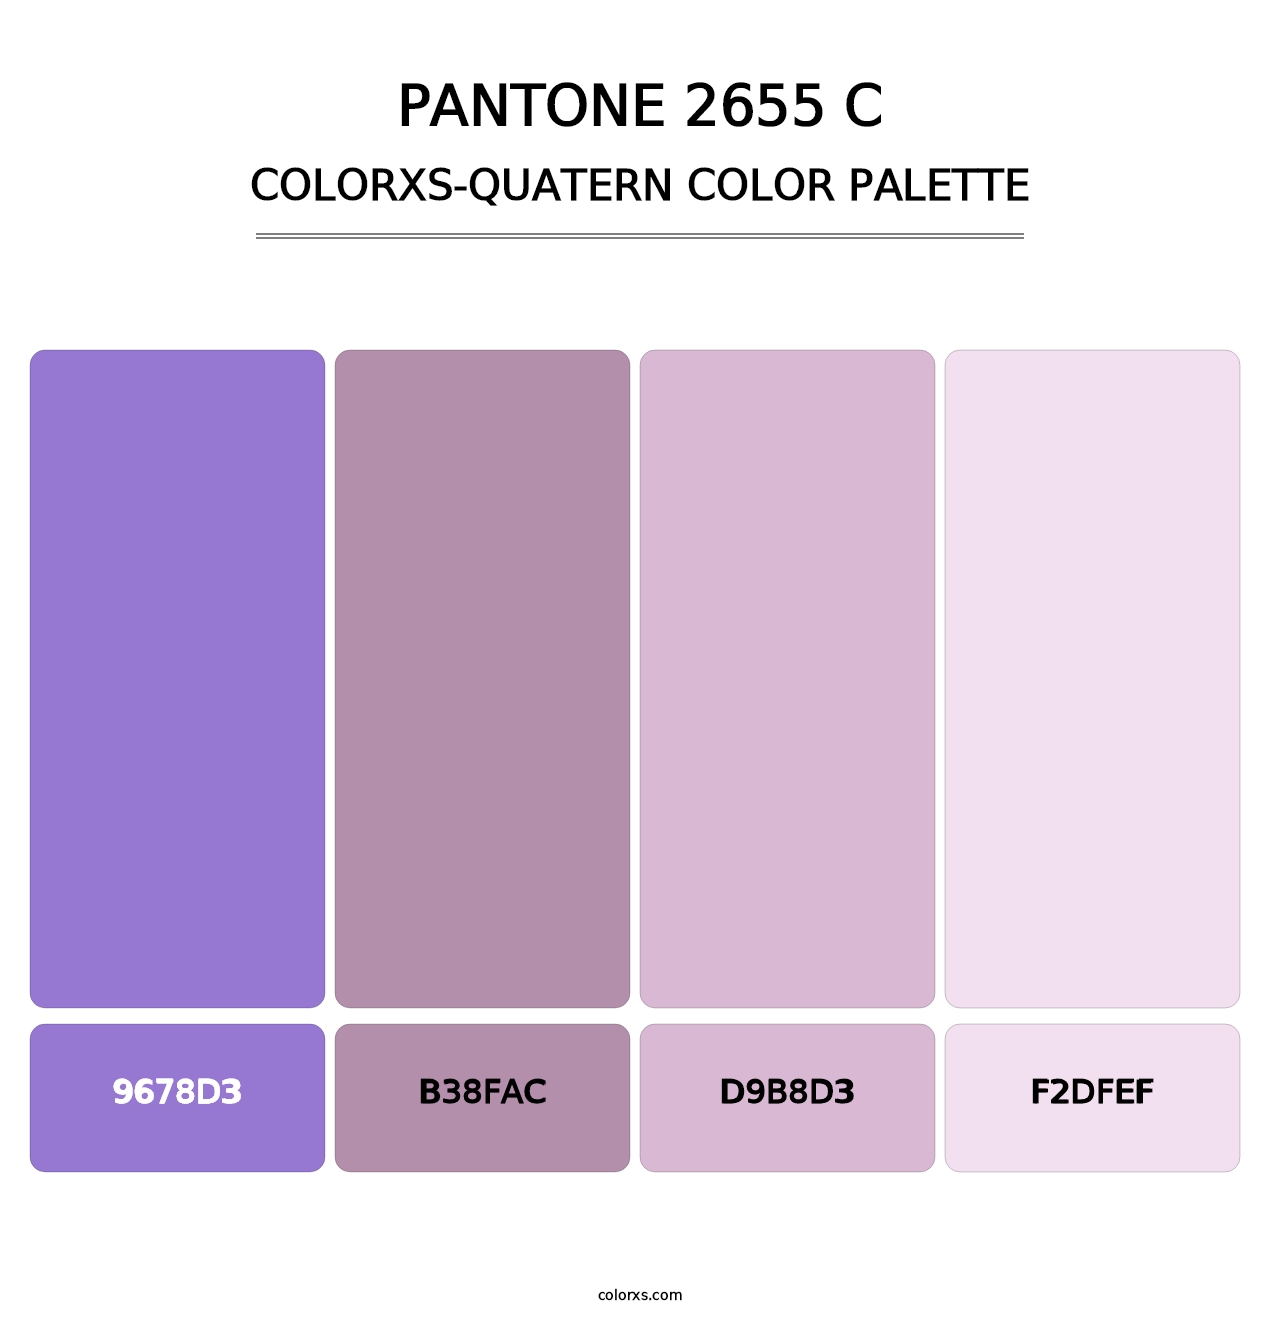 PANTONE 2655 C - Colorxs Quatern Palette